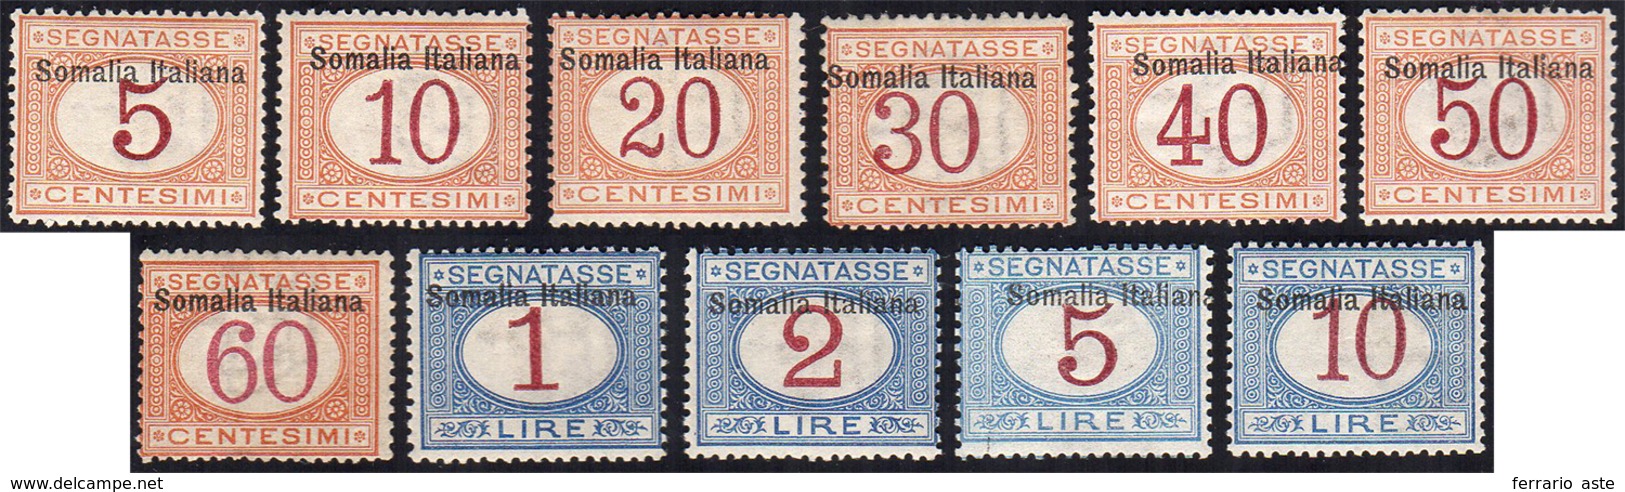 SEGNATASSE 1909 - Soprastampati In Alto (12/22), Gomma Integra, Perfetti. Cert. Sorani.... - Somalia